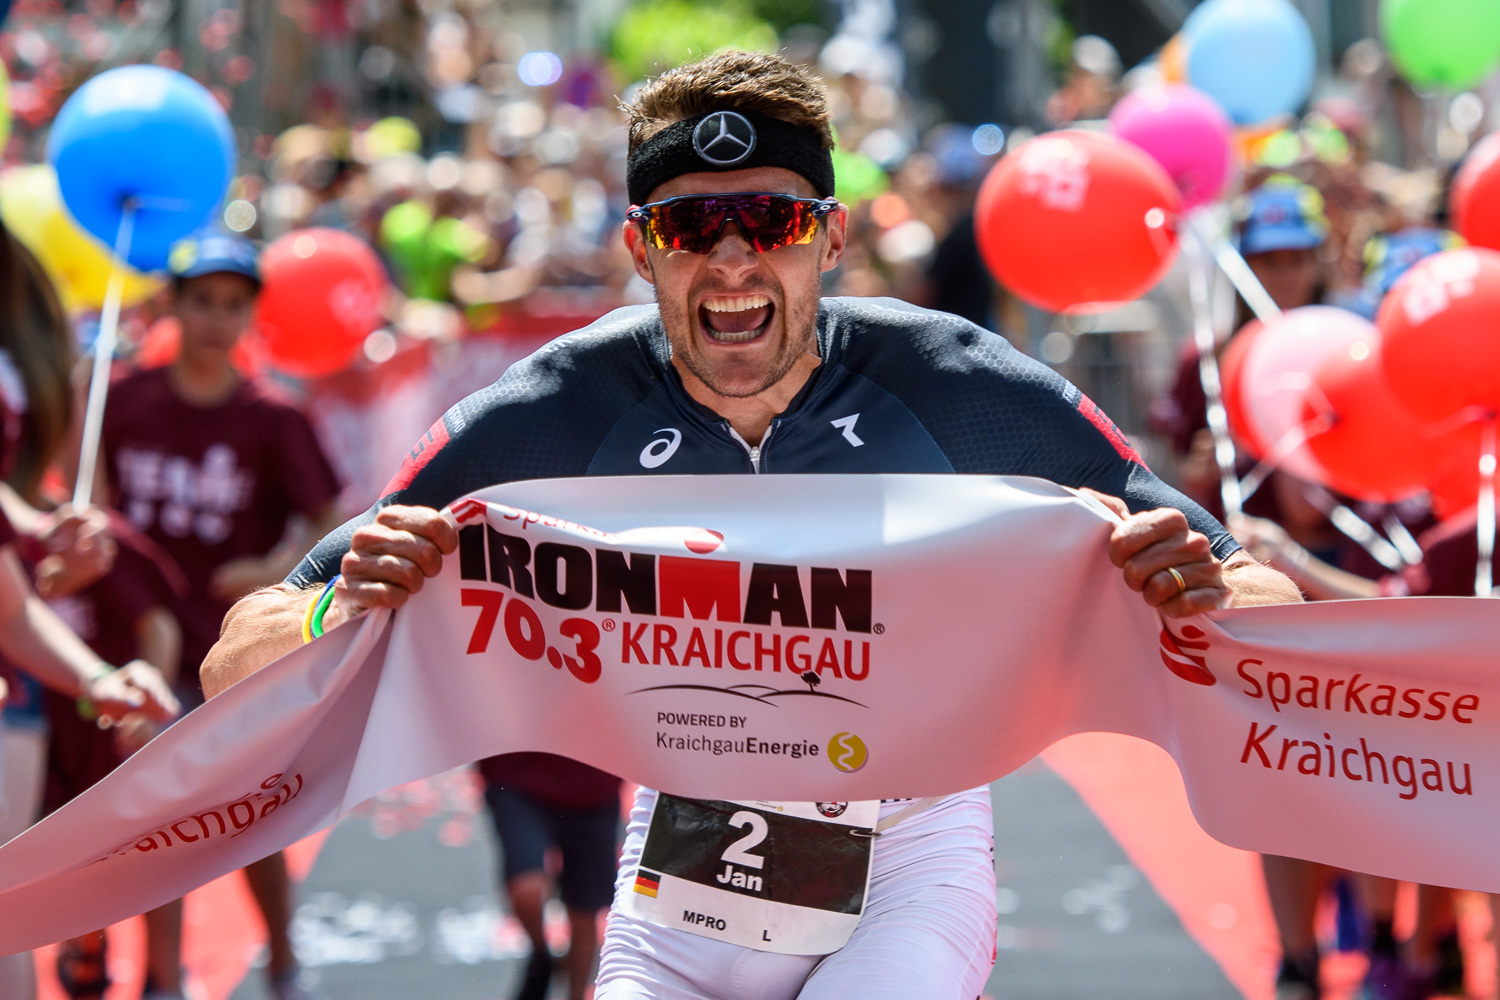 Ironman 70.3 Kraichgau Frodeno mit StartZielSieg, Philipp gelingt